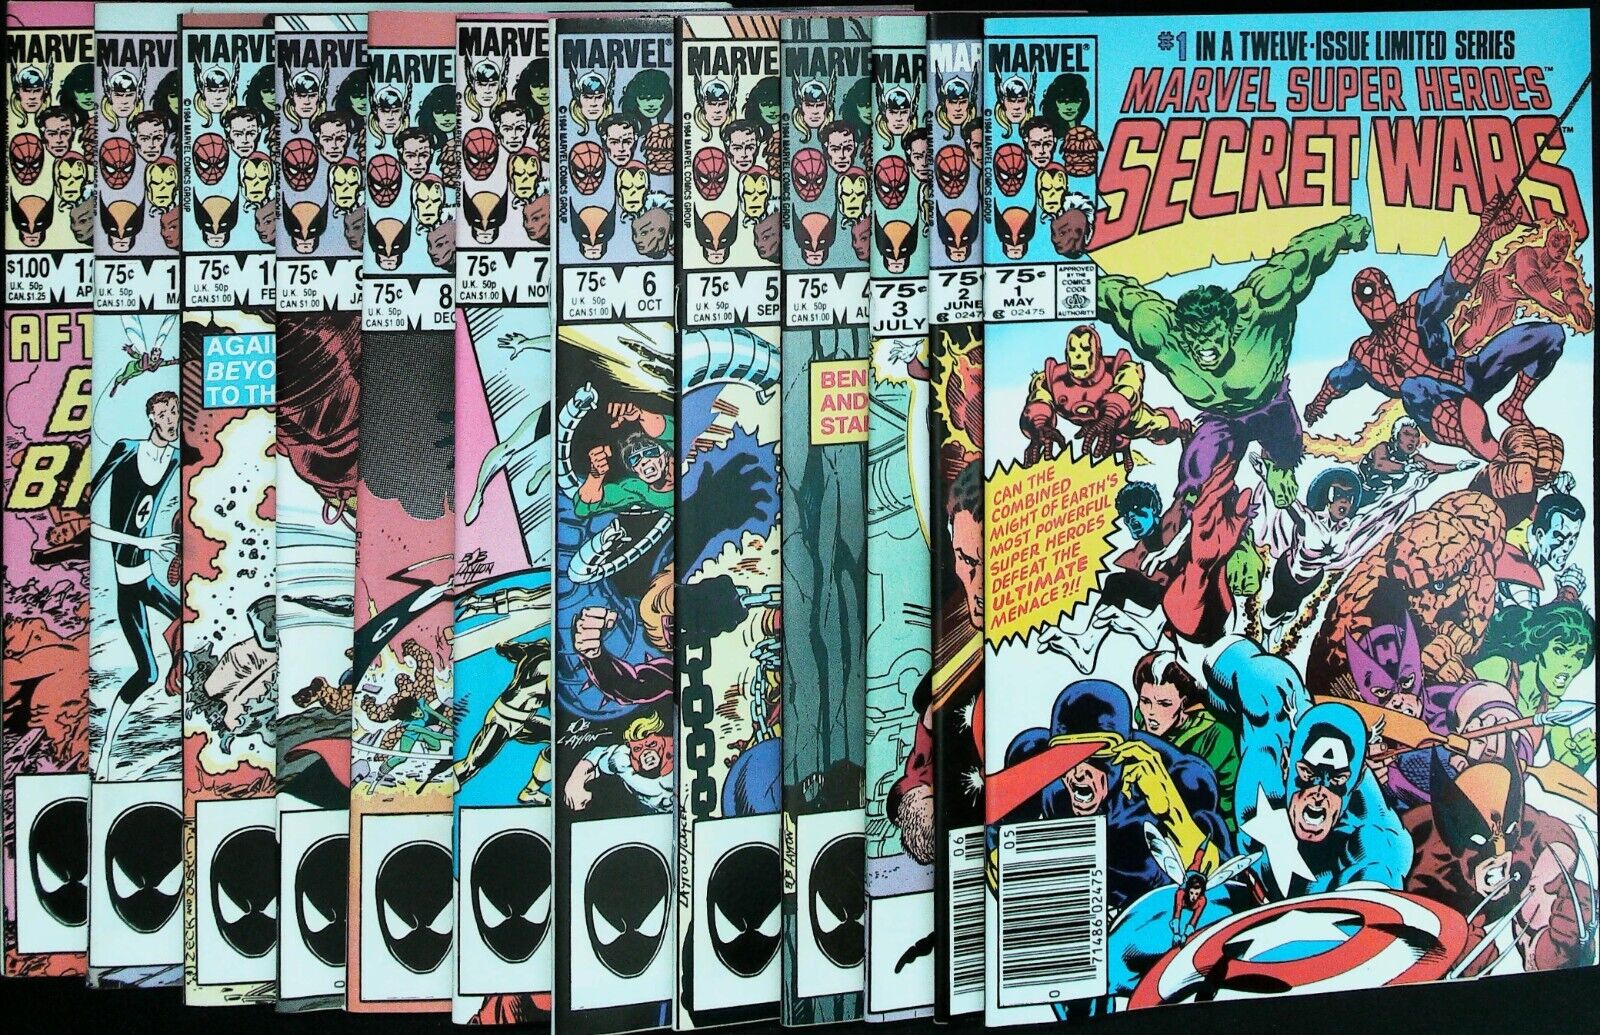 Marvel Super Heroes Secret Wars Lot (1984-1985) - Full Run - High Grade